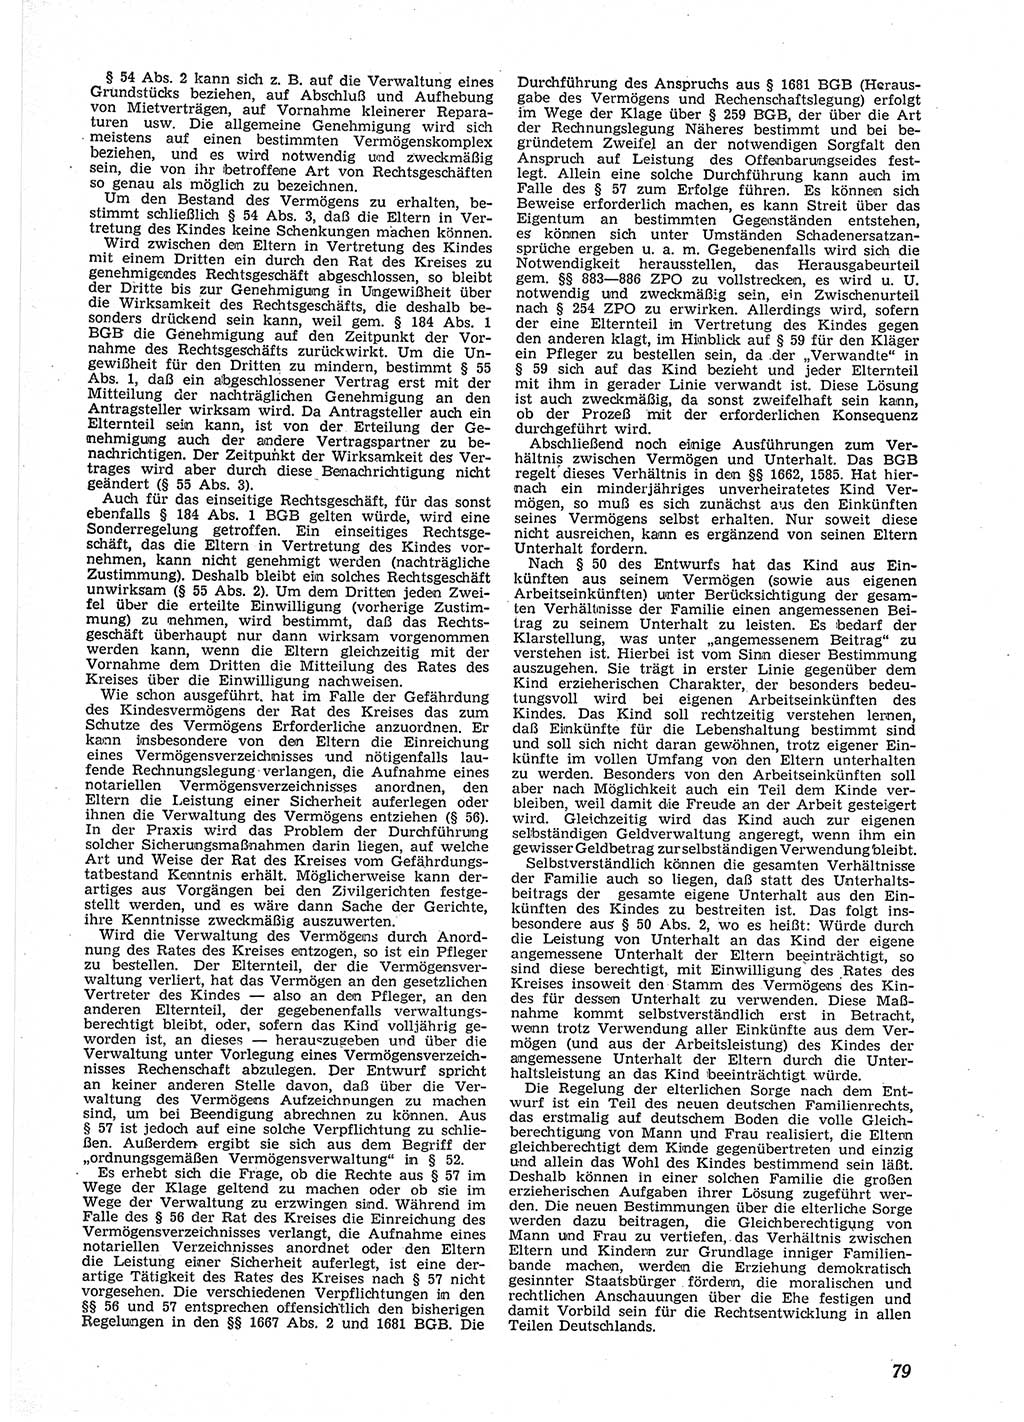 Neue Justiz (NJ), Zeitschrift für Recht und Rechtswissenschaft [Deutsche Demokratische Republik (DDR)], 9. Jahrgang 1955, Seite 79 (NJ DDR 1955, S. 79)